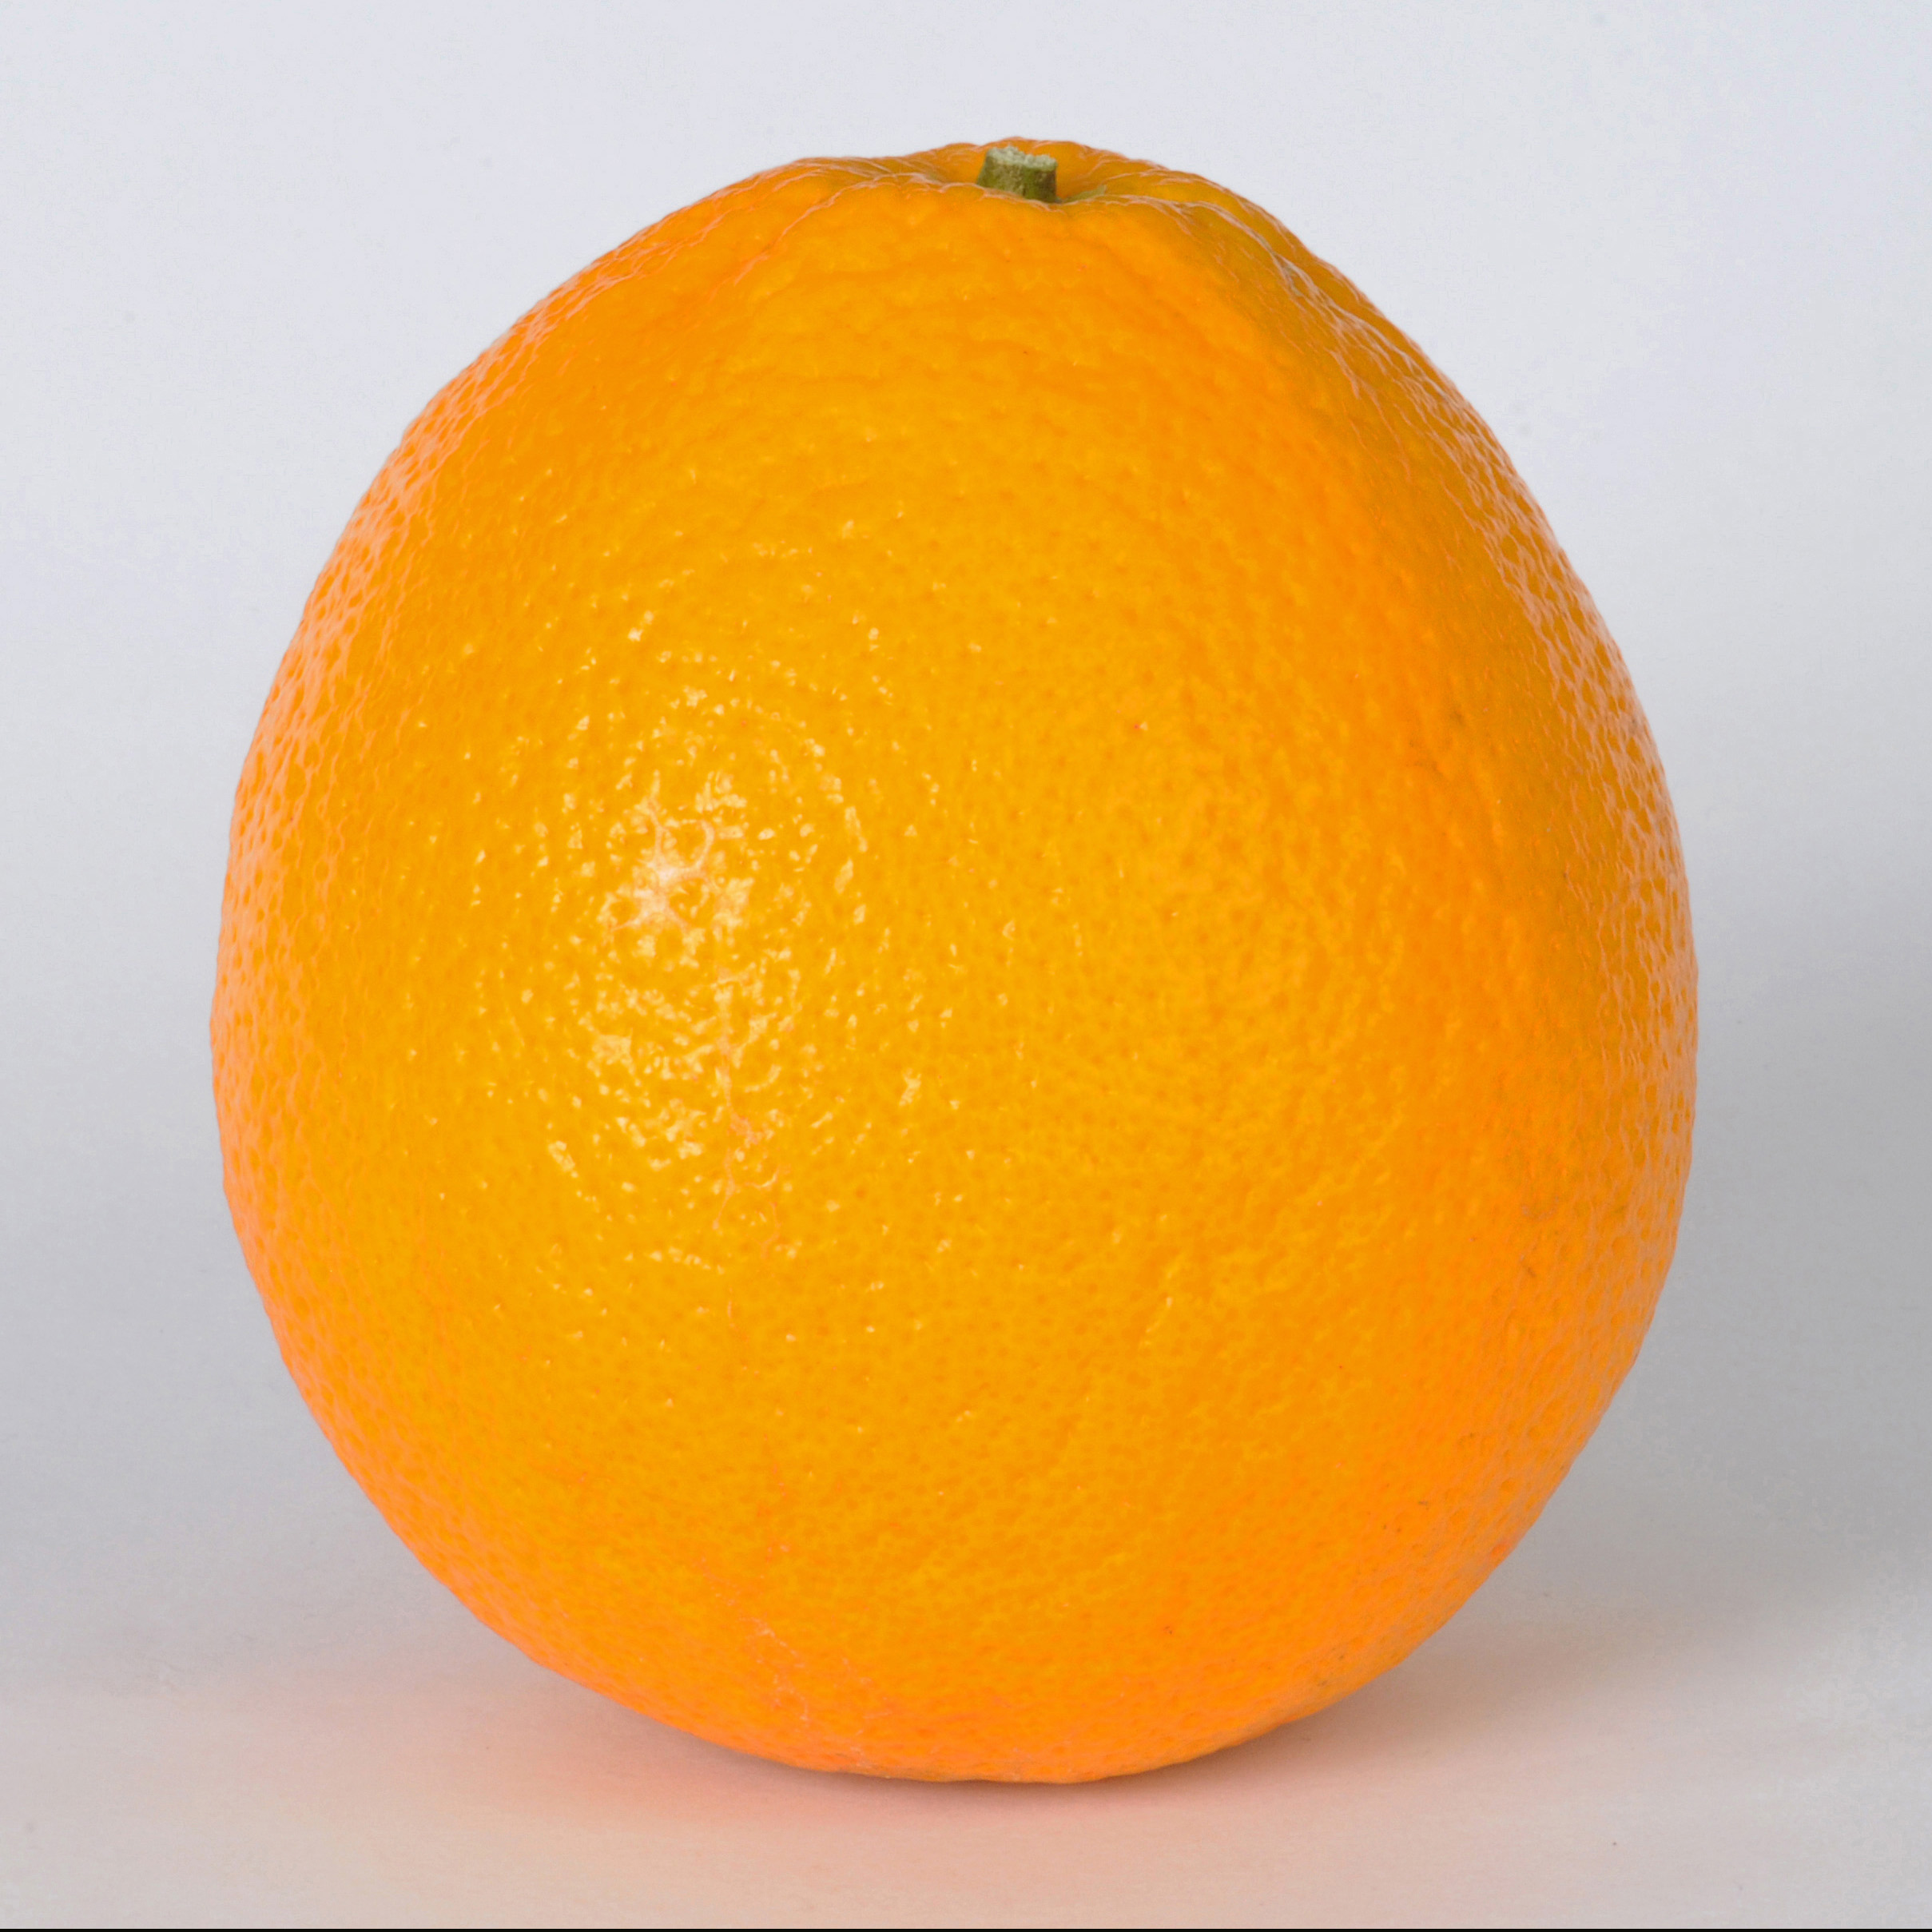  Orange Fruit  picture image Free stock photo Public 